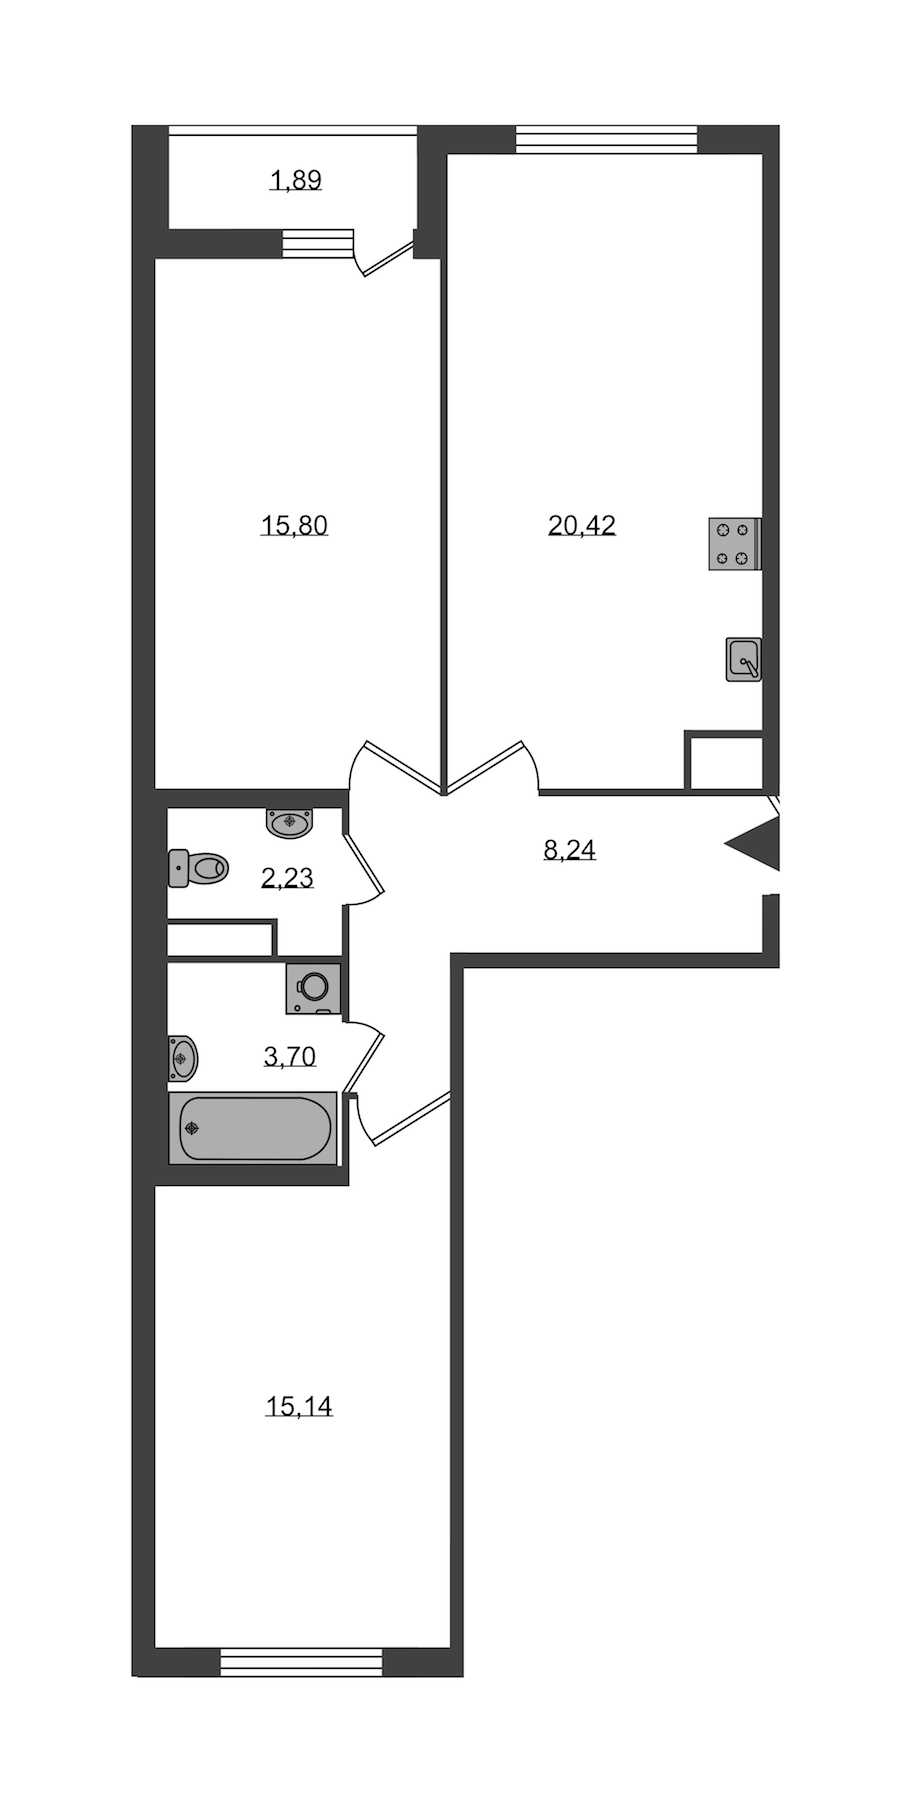 Двухкомнатная квартира в KVS: площадь 65.53 м2 , этаж: 1 – купить в Санкт-Петербурге